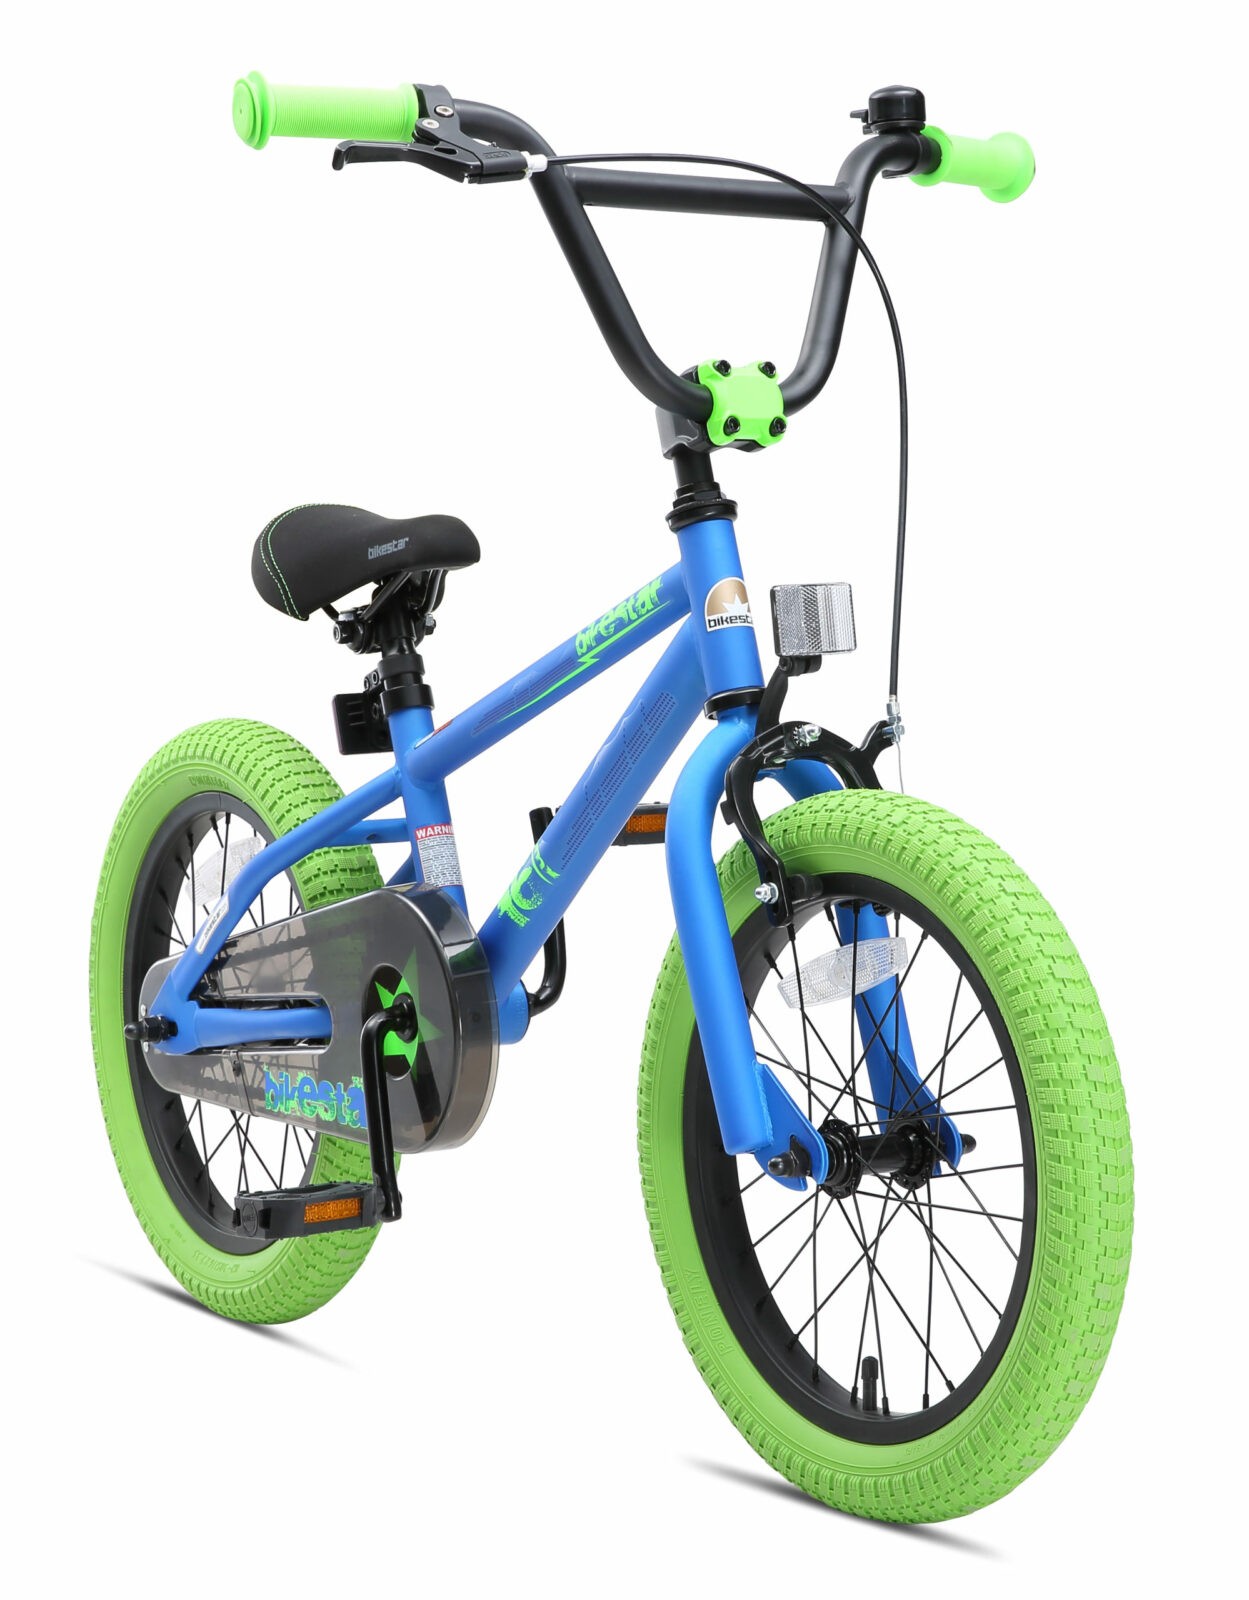 Correctie mouw reflecteren Bikestar 16 inch BMX kinderfiets, blauw / groen - Fietsdirect